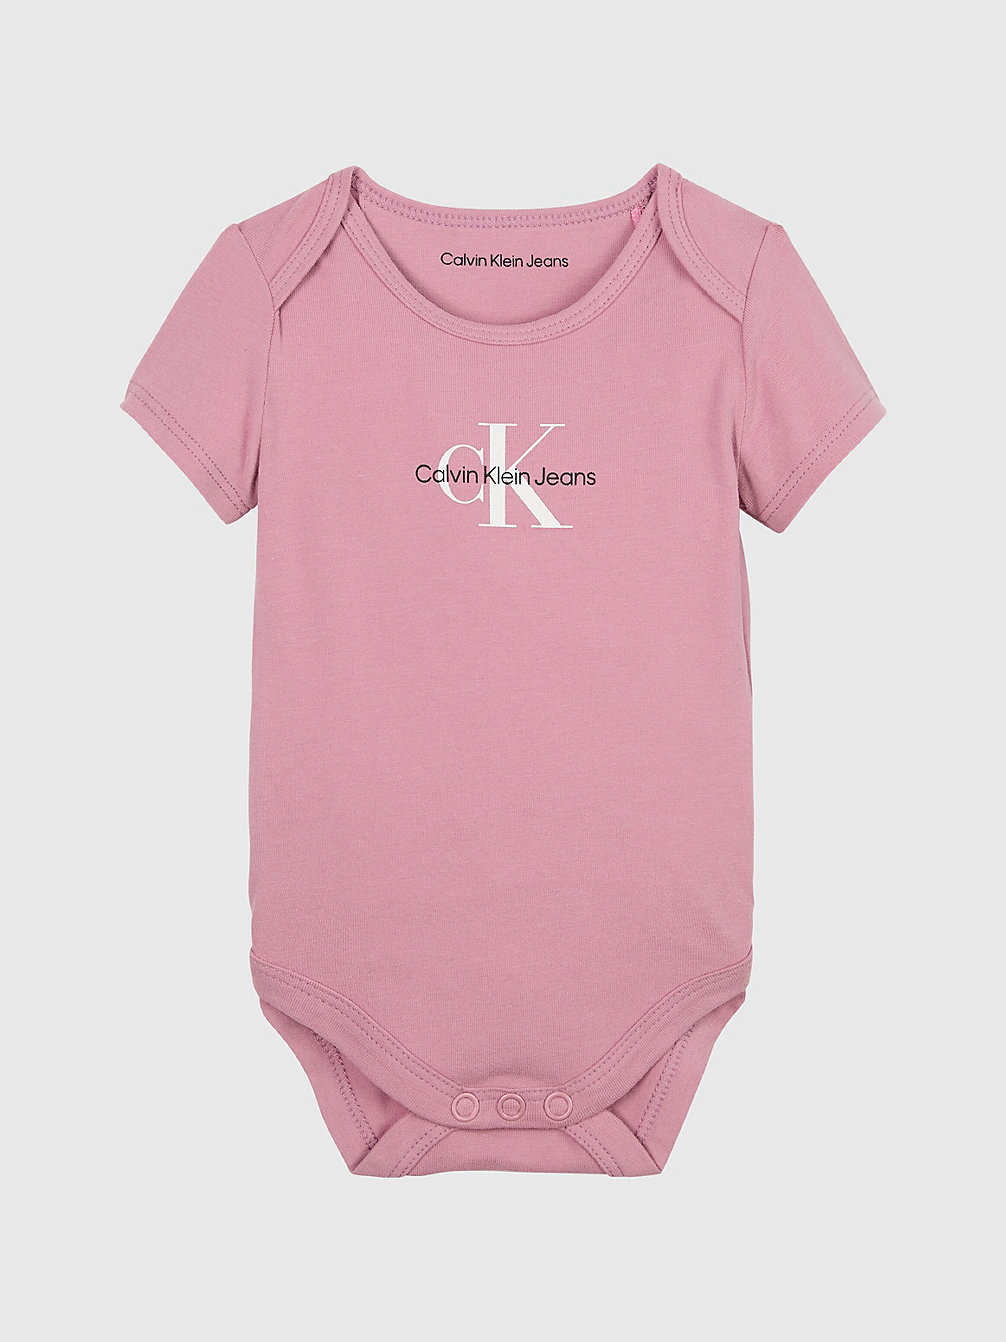 FOXGLOVE Newborn Logo Bodysuit undefined newborn Calvin Klein